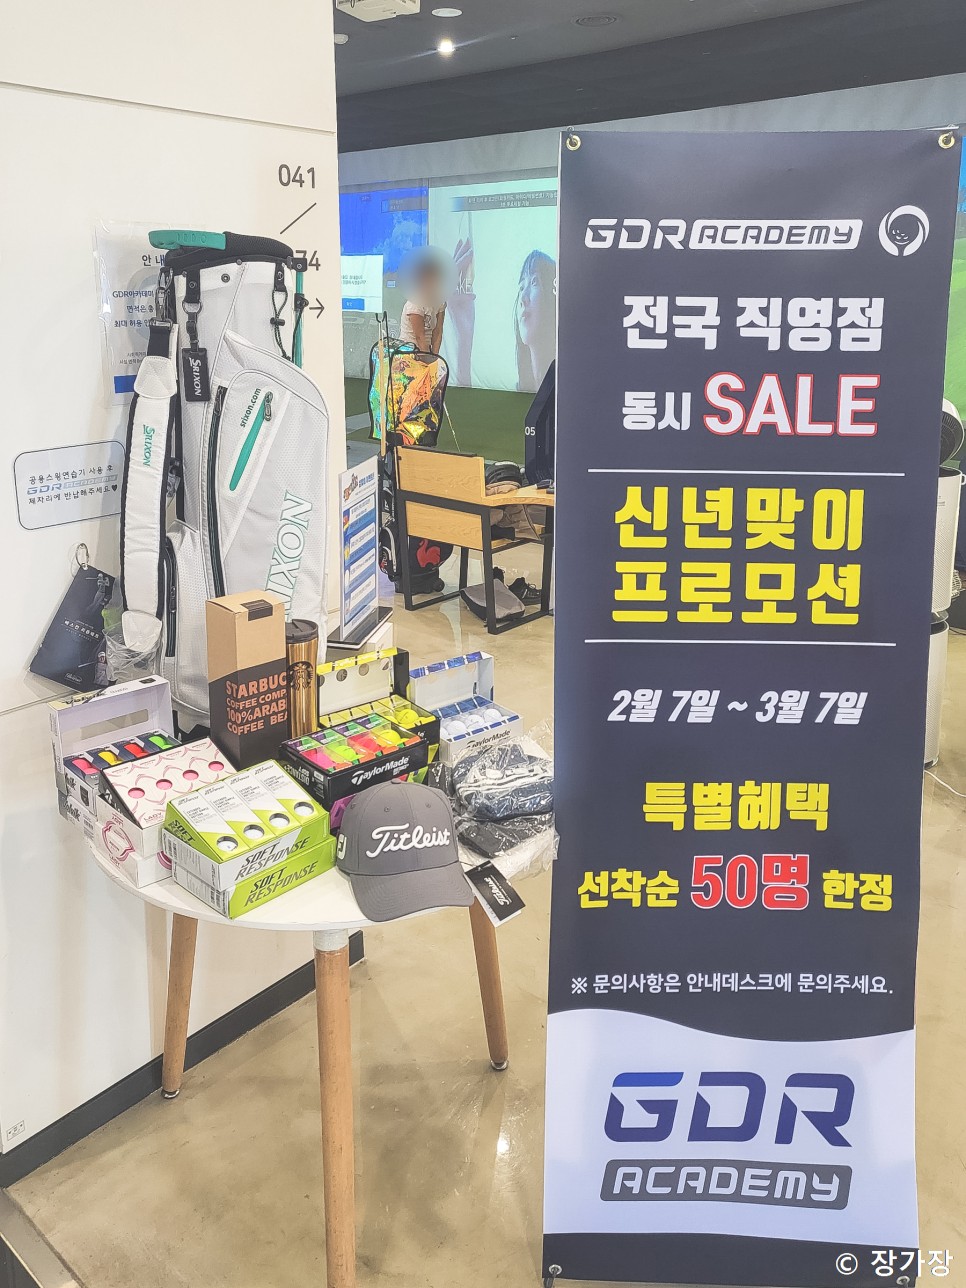 하남 미사 골프연습장, GDR아카데미하남미사2호점 이벤트 소식!